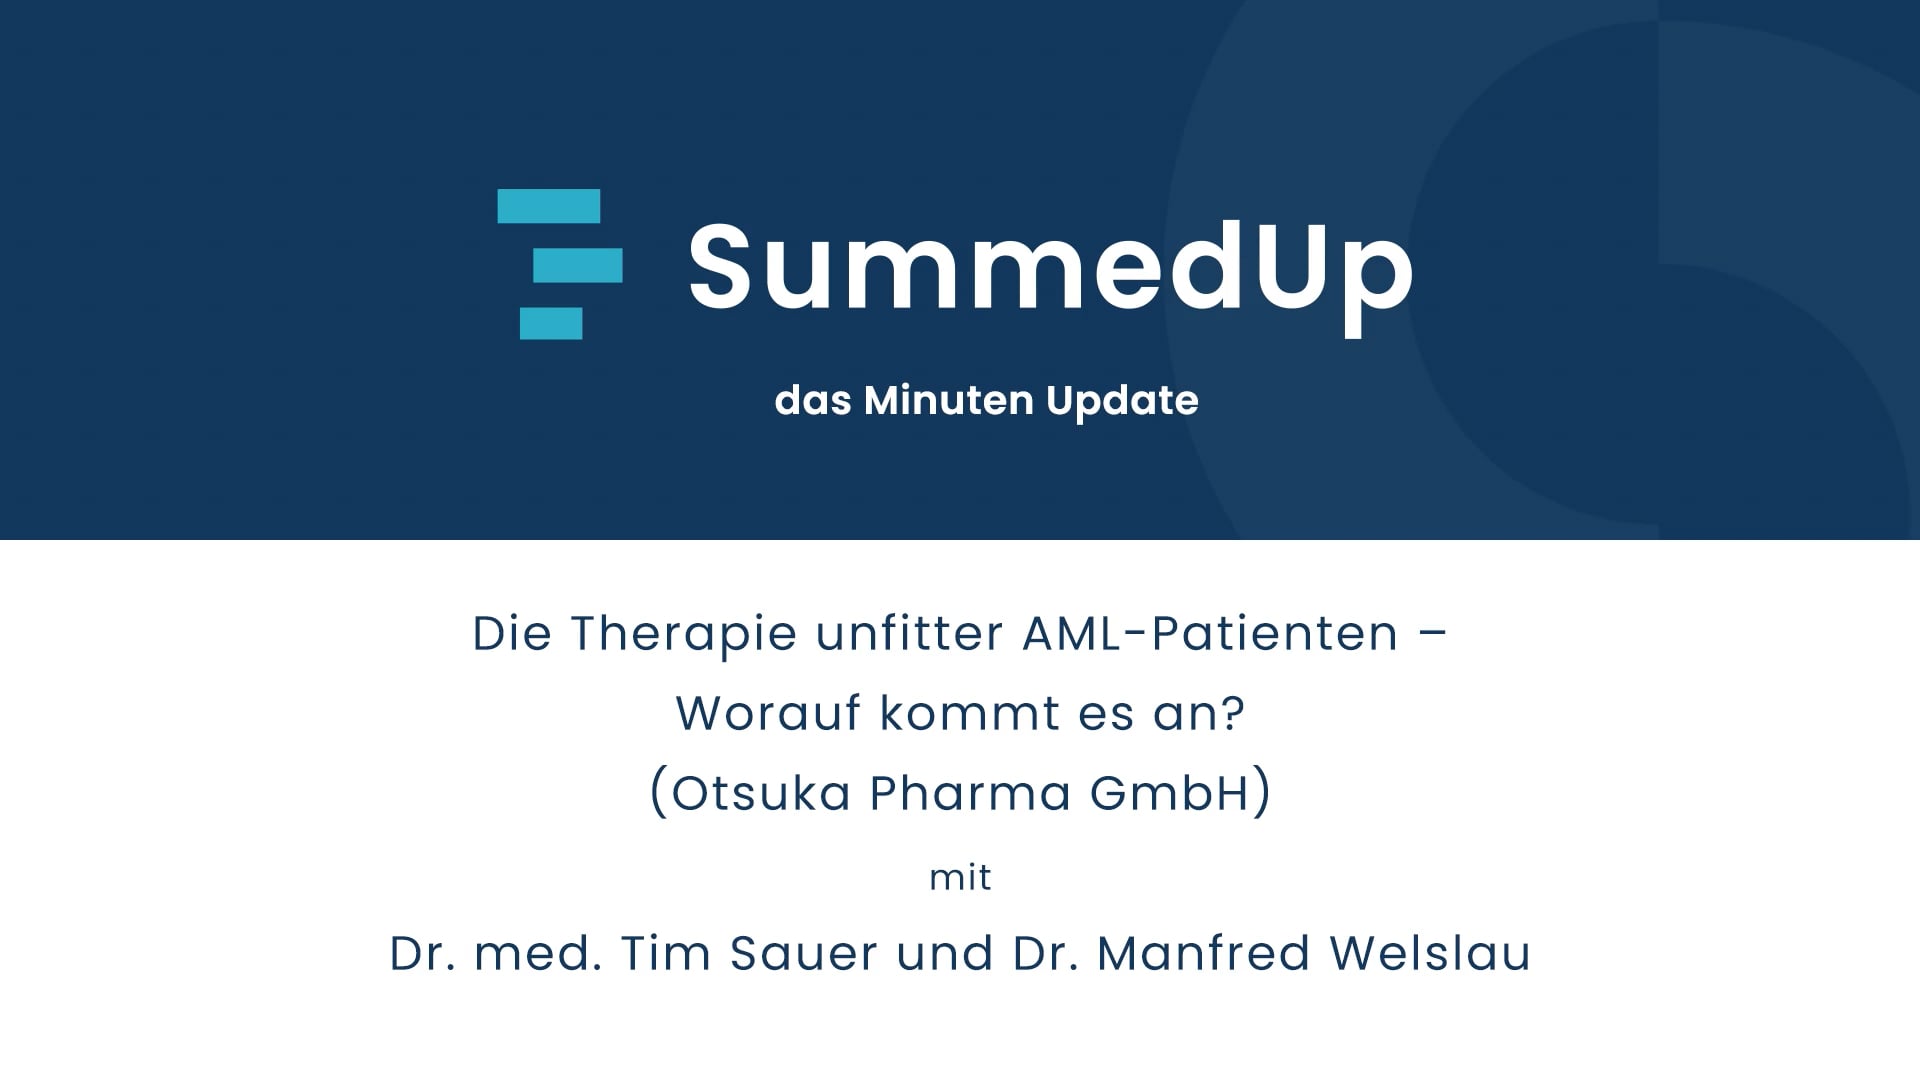 Die Therapie unfitter AML-Patienten - Worauf kommt es an? - Dr. med. Tim Sauer und Dr. Manfred Welslau